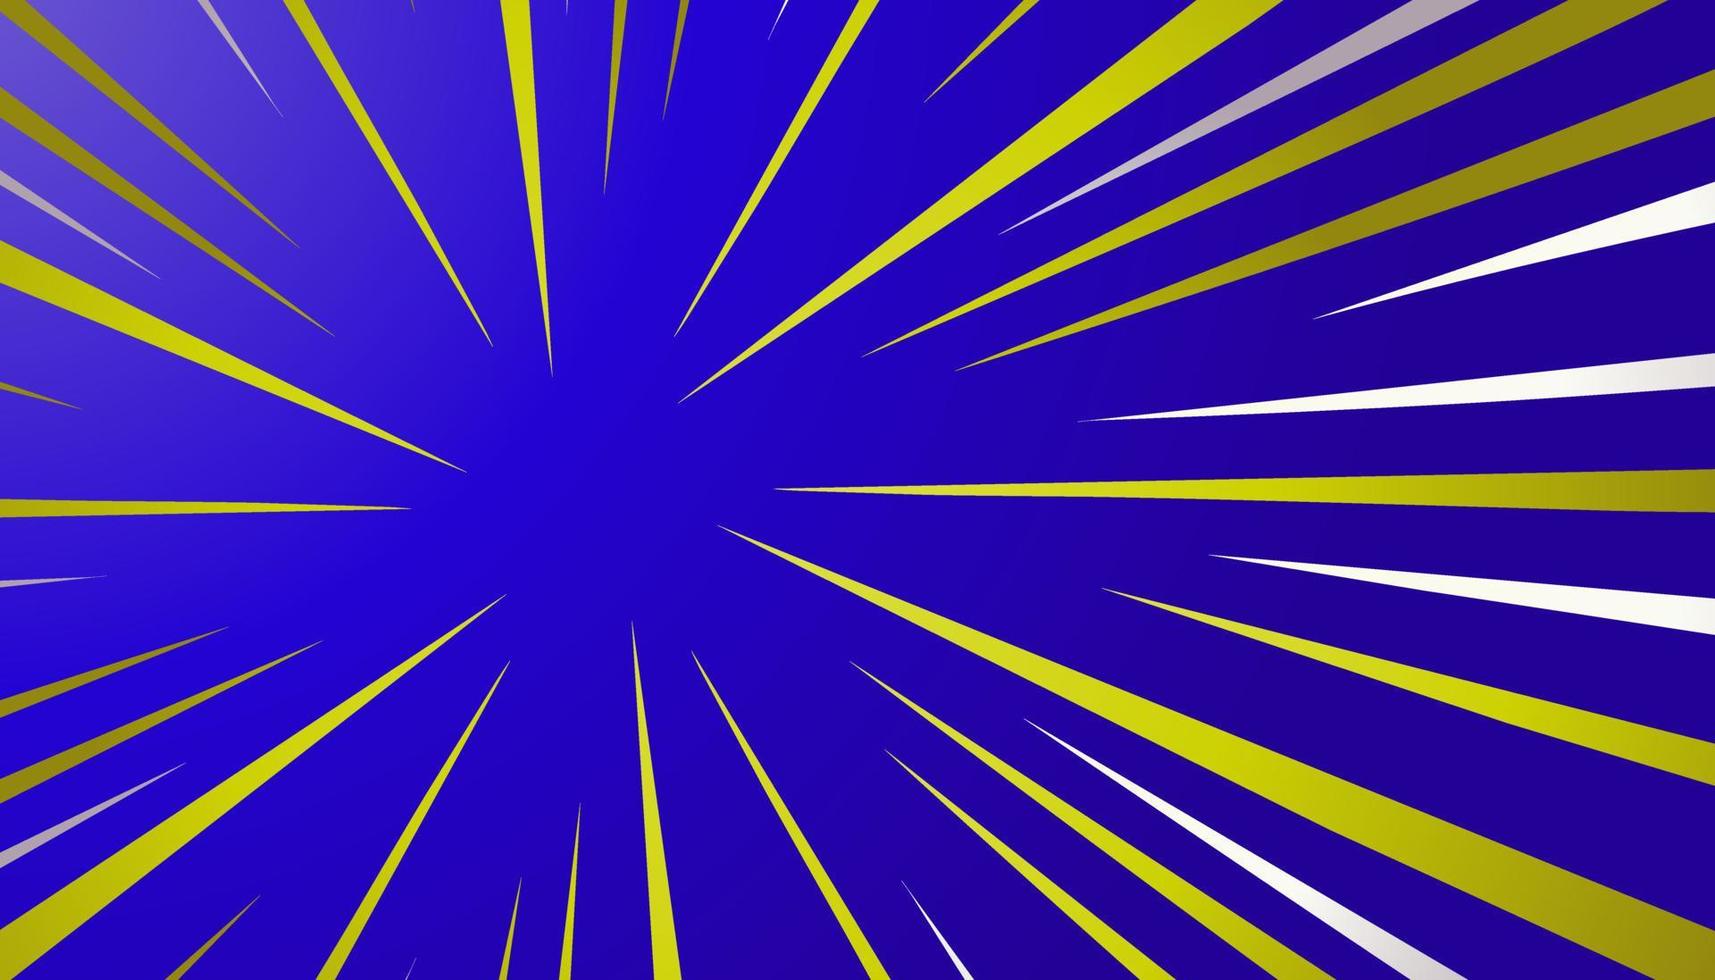 vektor komisk bakgrund i blå, gul och vit färger